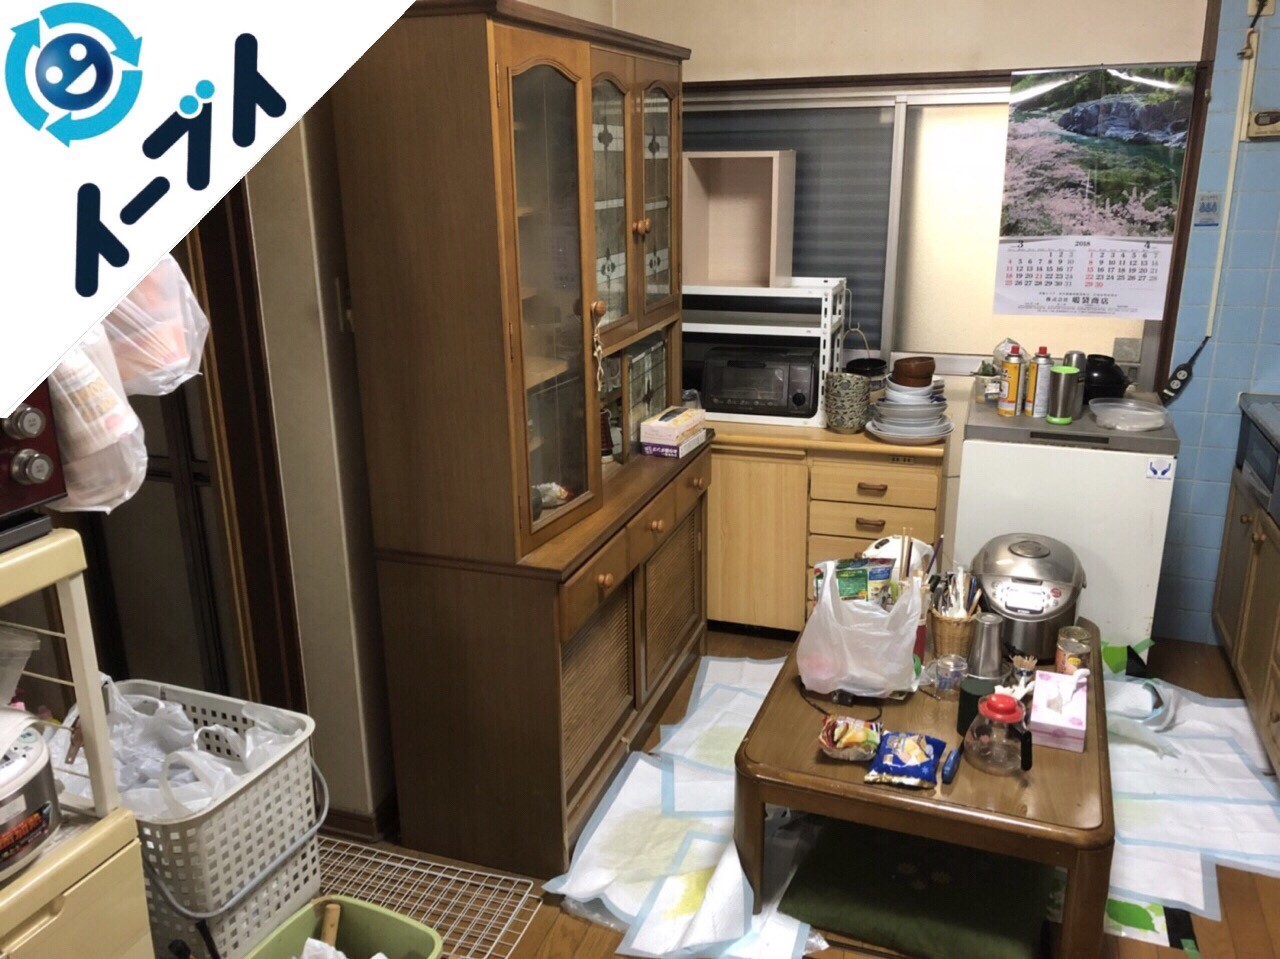 2018年7月4日大阪府八尾市で食器棚や押入れの不用品を片付け処分しました。写真4